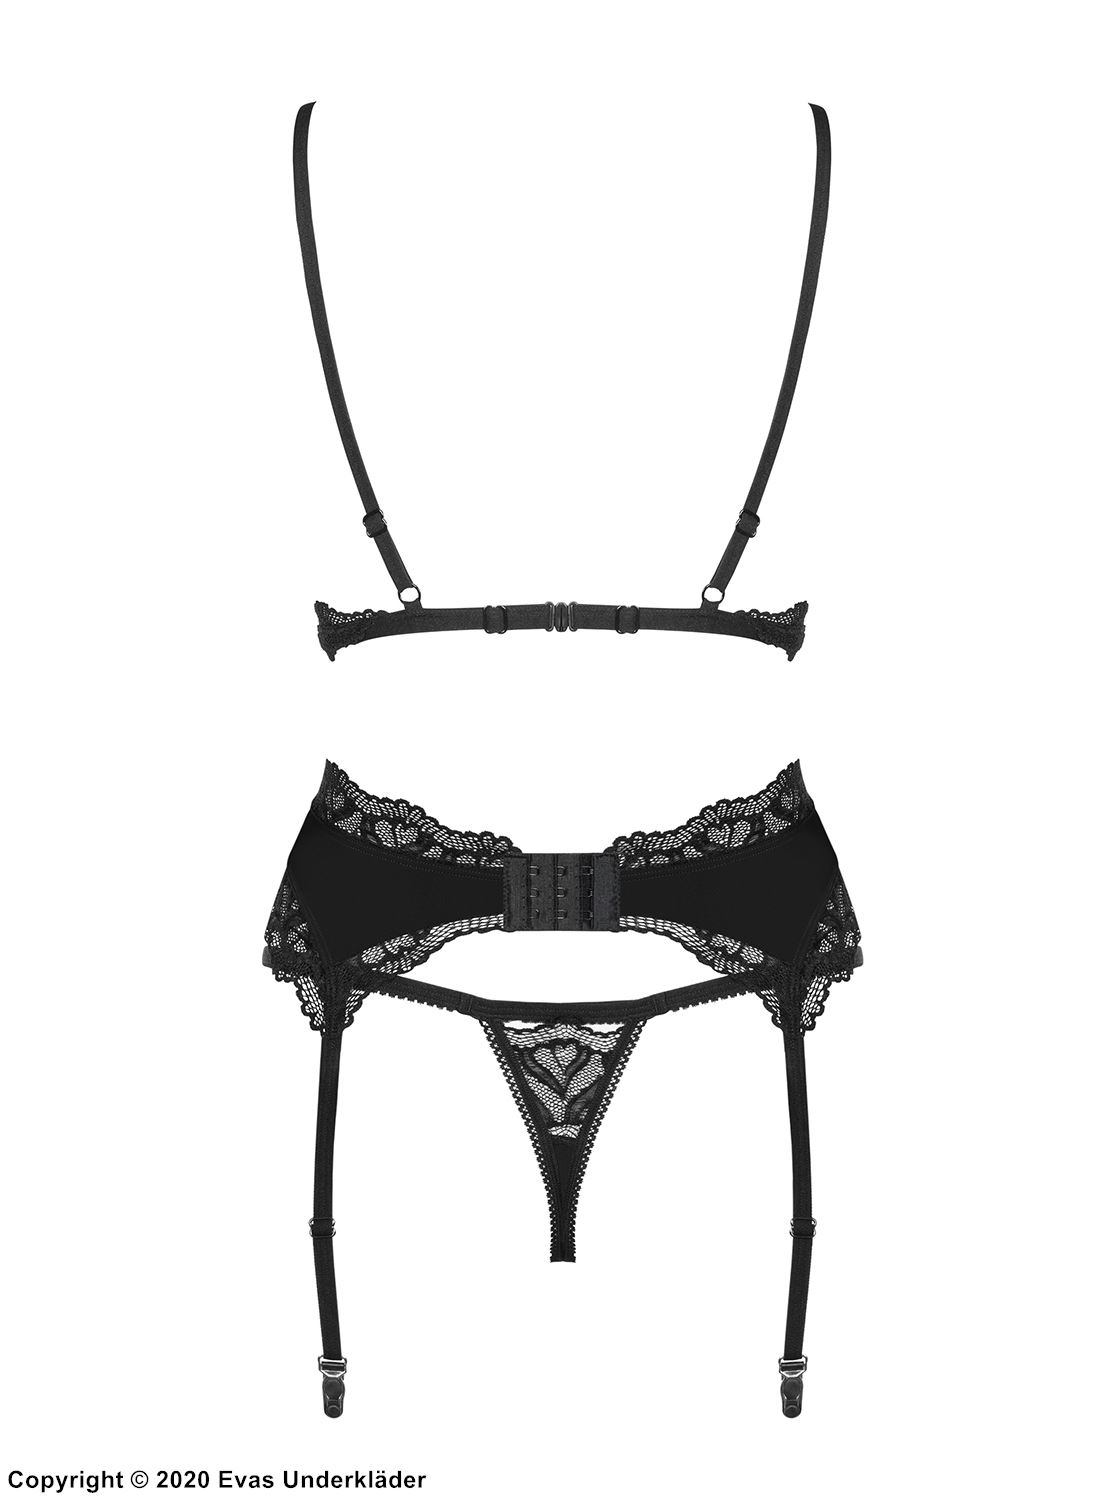 Seductive lingerie set, lace trim, garter belt